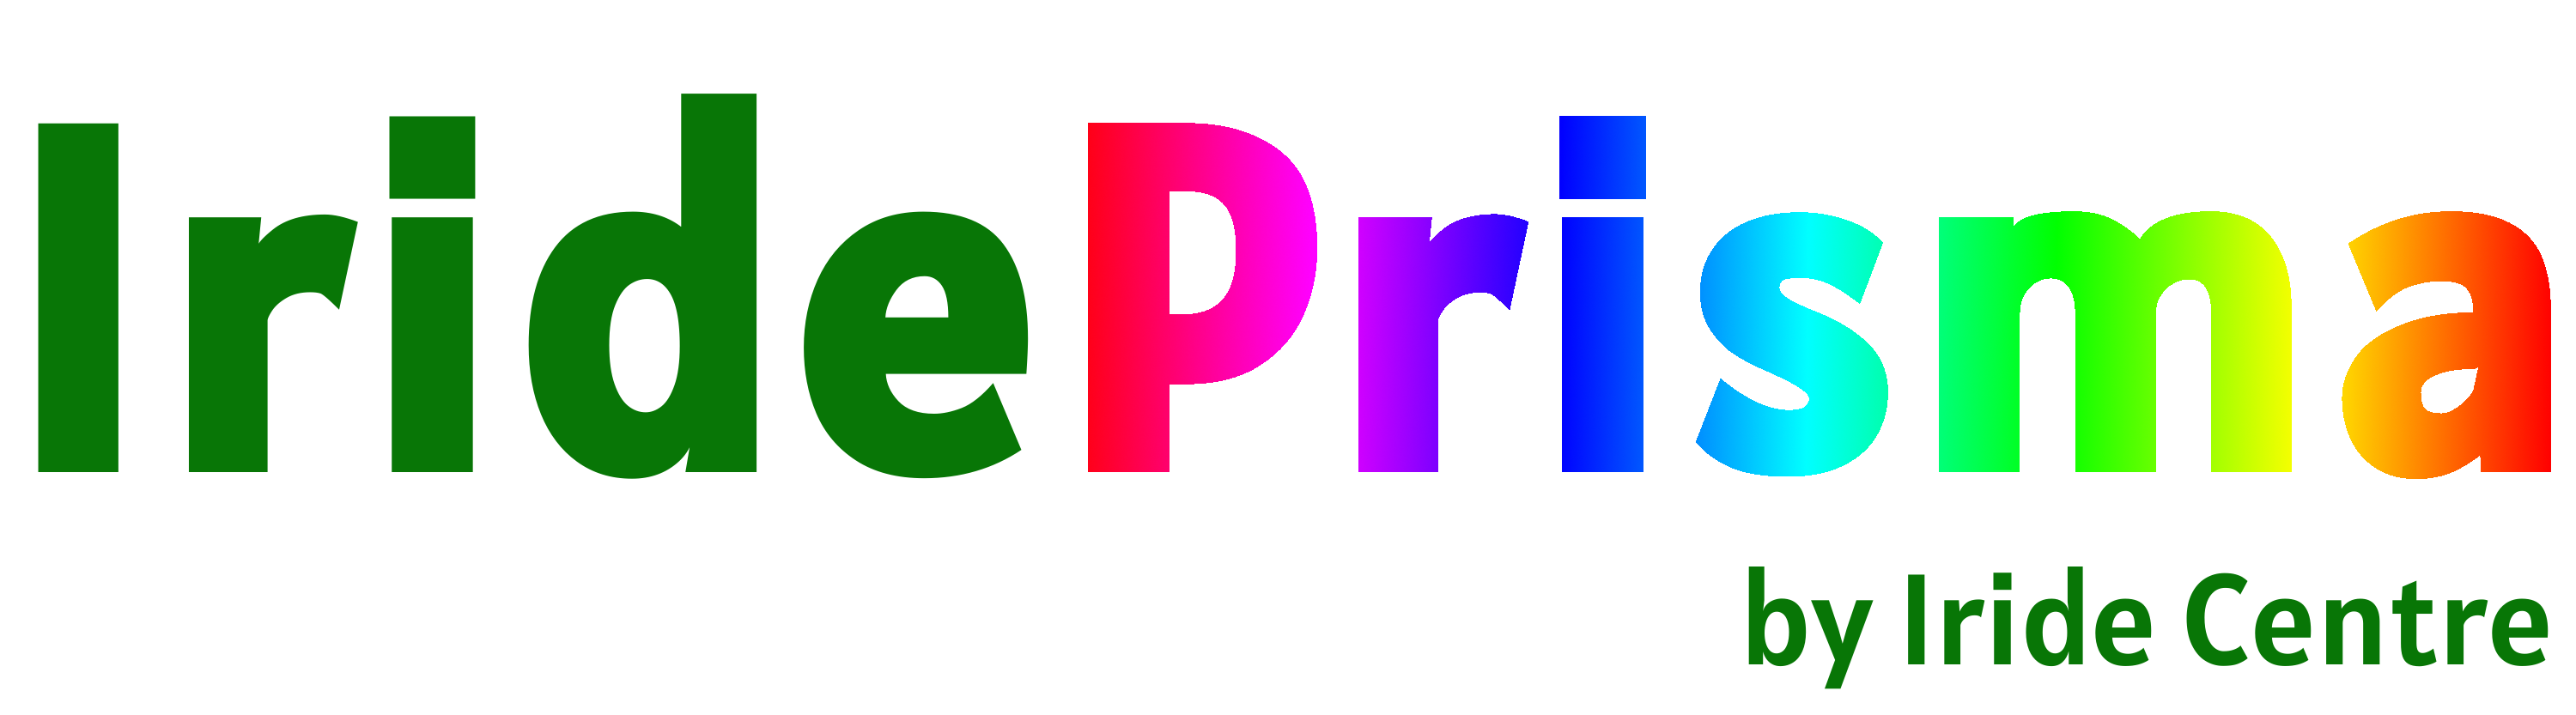 Prisma logo no background